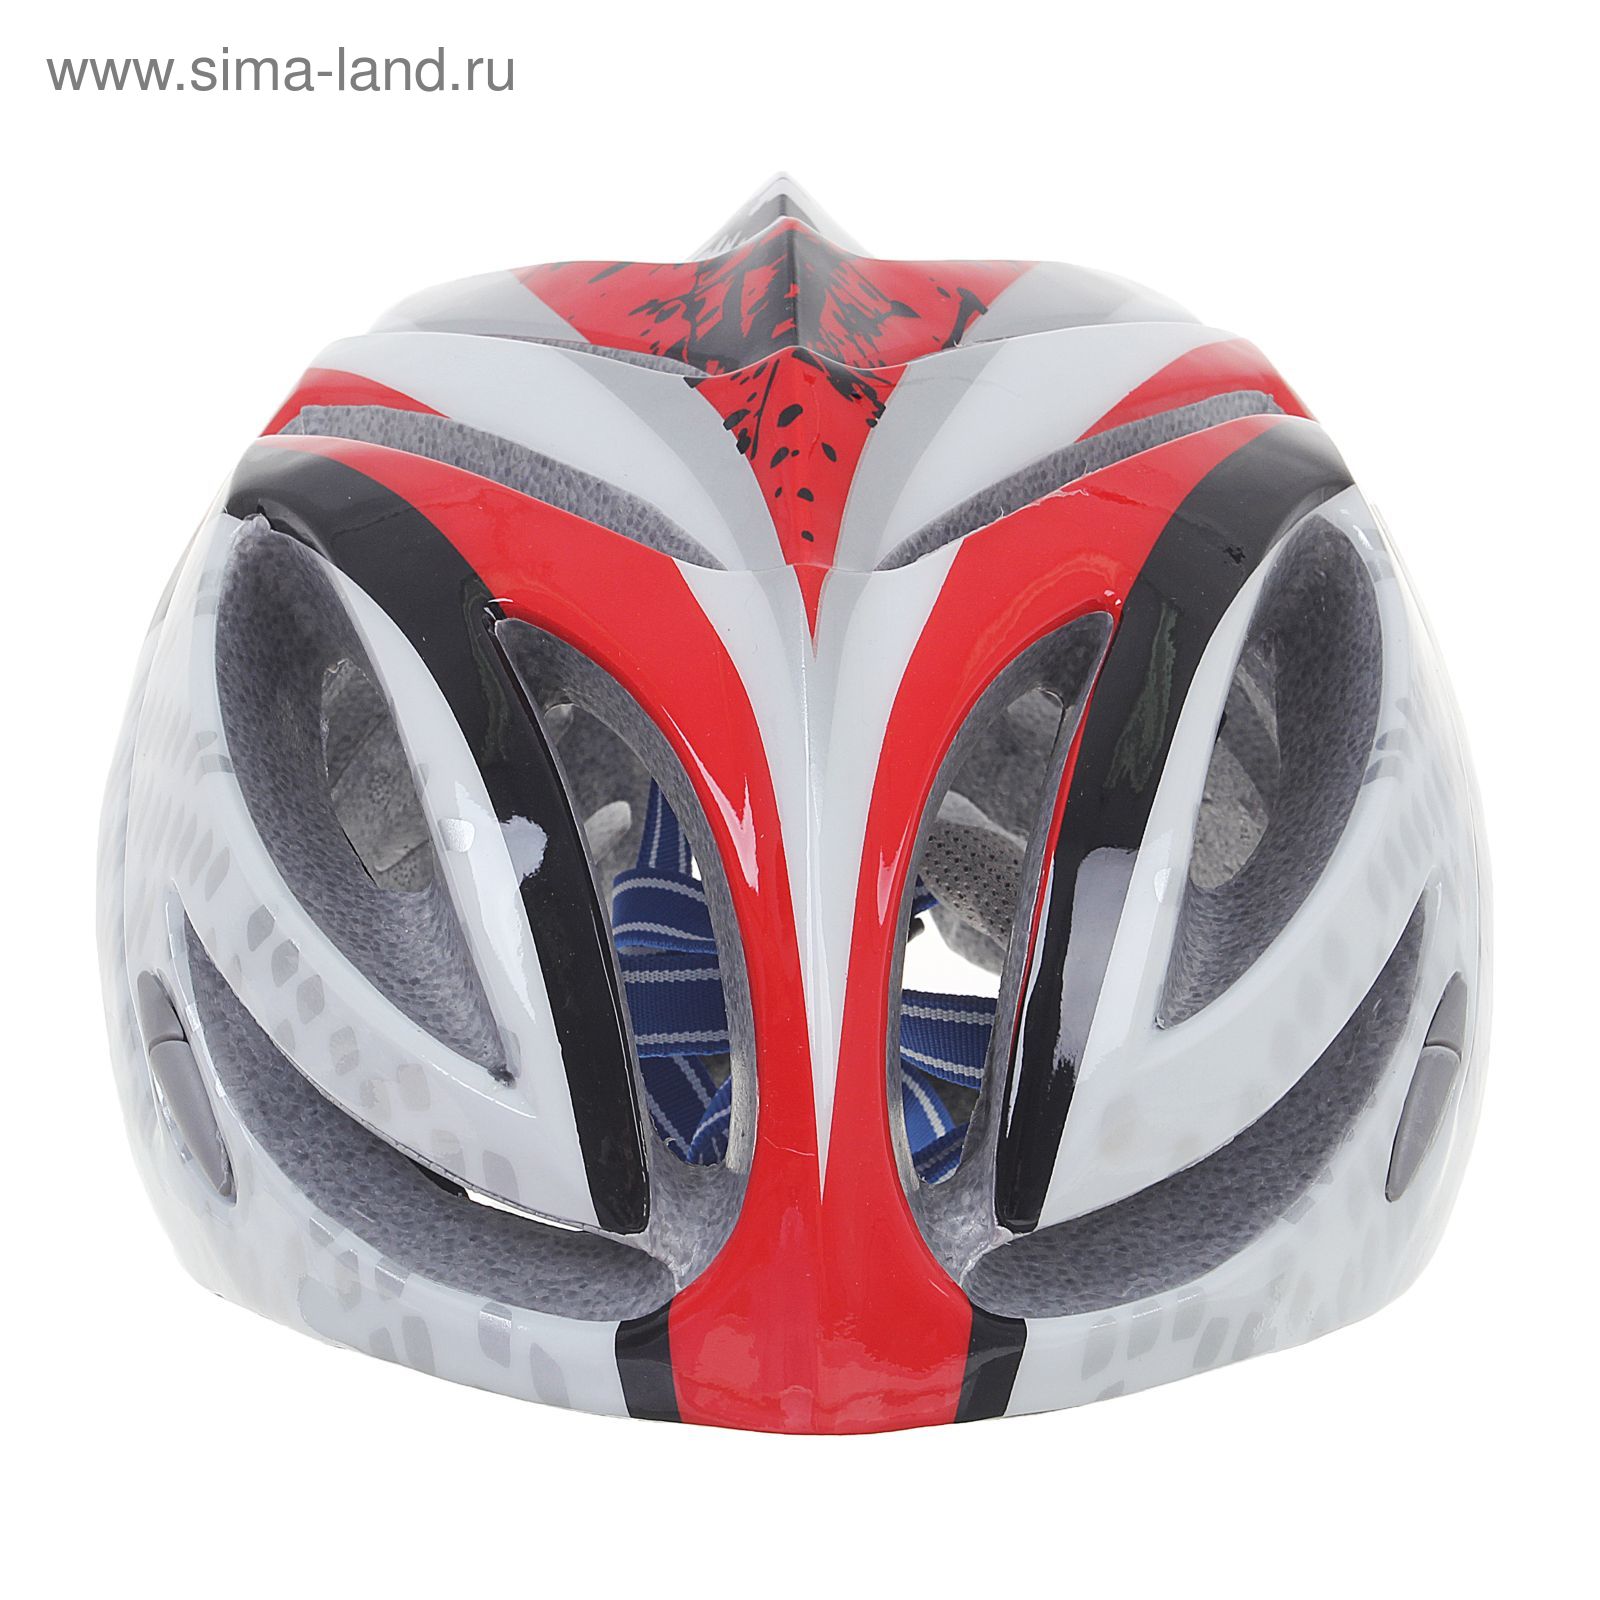 Шлем велосипедиста взрослый ОТ-T23, бело-красно-черный, диаметр 54 см